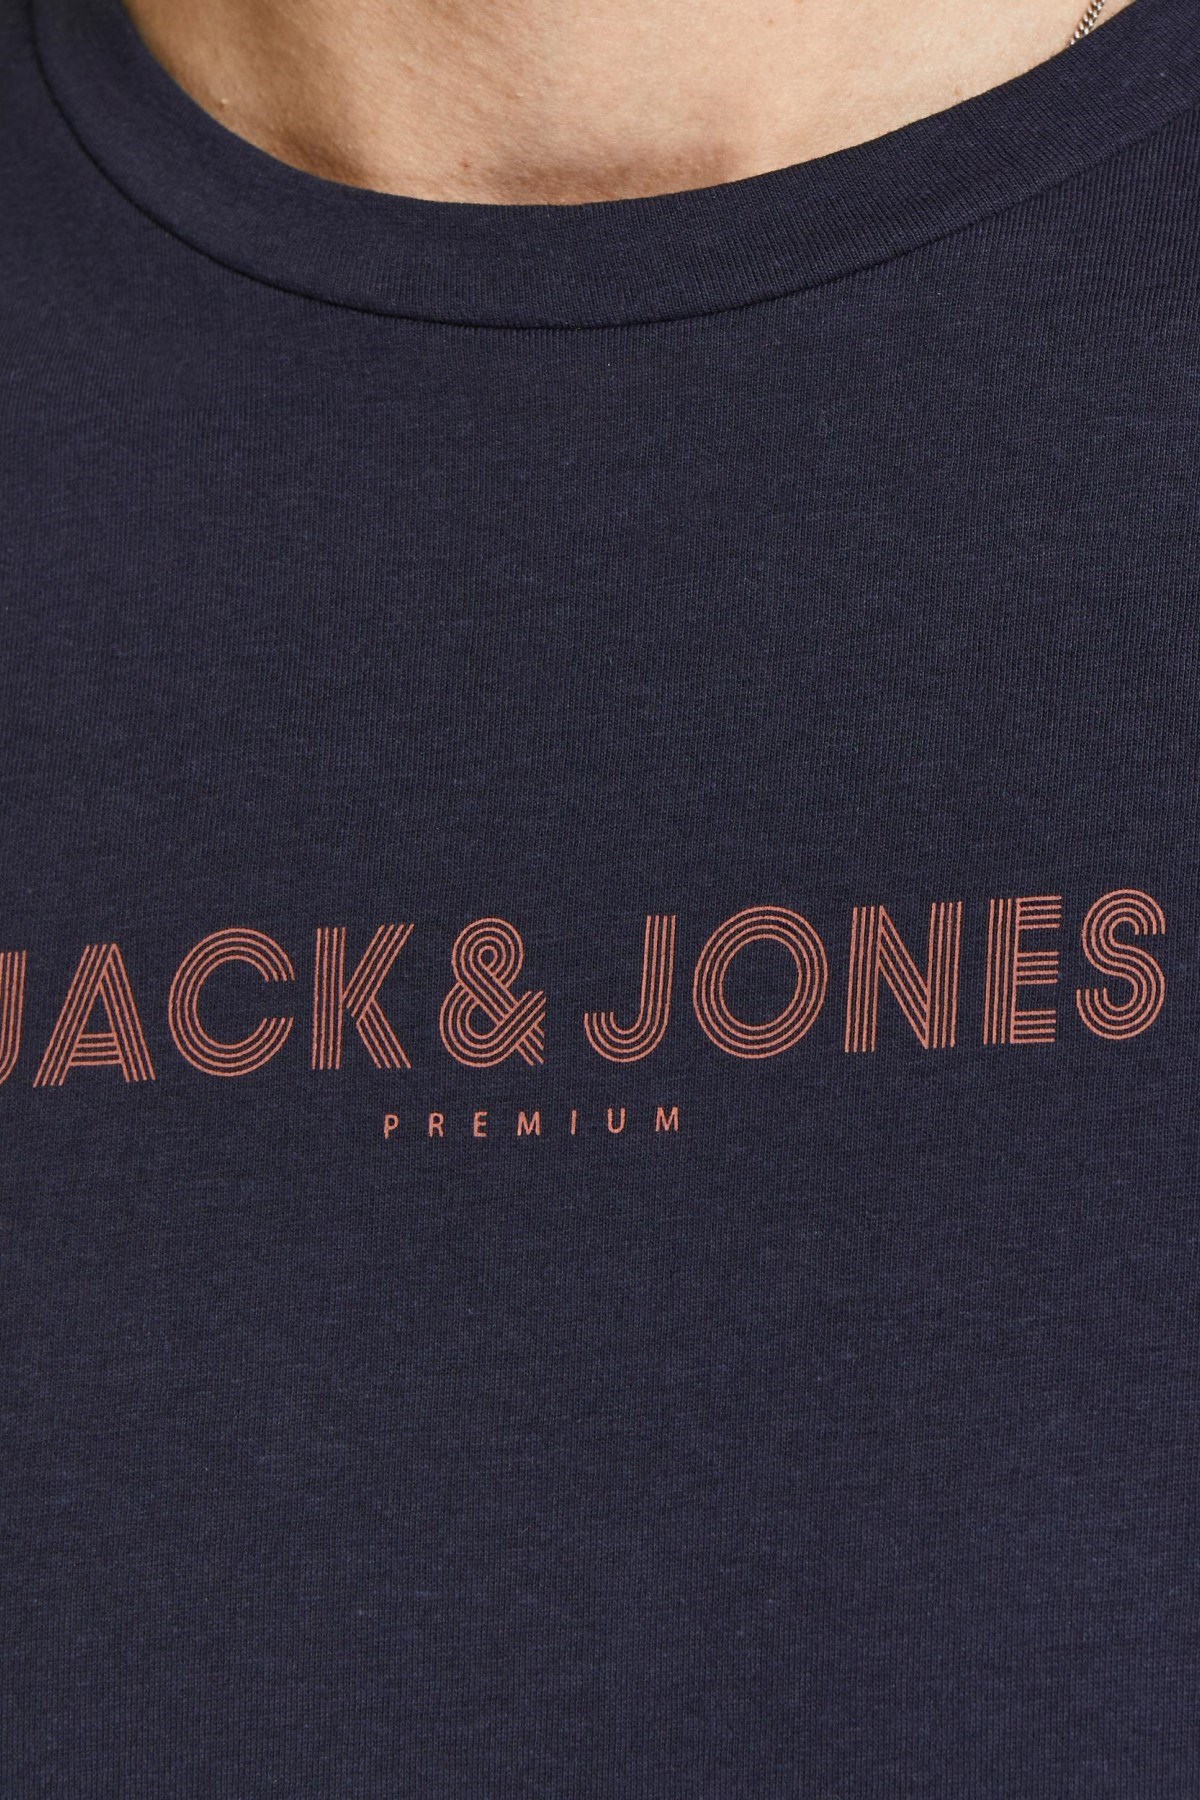 Jack Jones Erkek T-Shirt 12208467 Perfect Navy